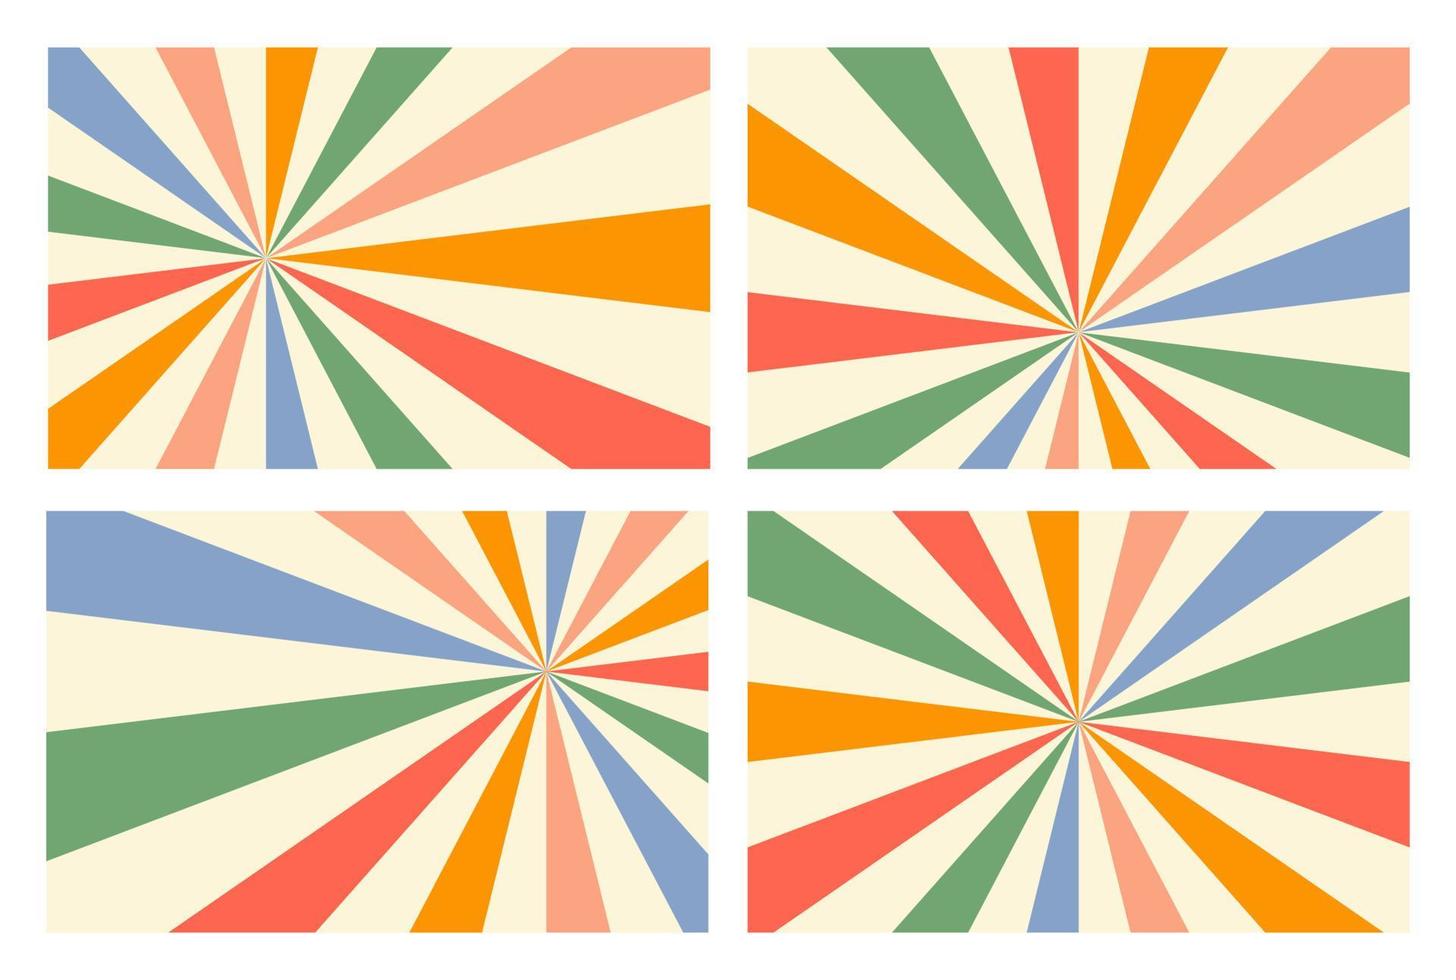 zonnestraal gloed horizontale achtergronden in blauwe, rode, gele, groene en beige kleuren. trendy retro vectorillustratie. circusposter of plakkaat. pastelkleuren vector